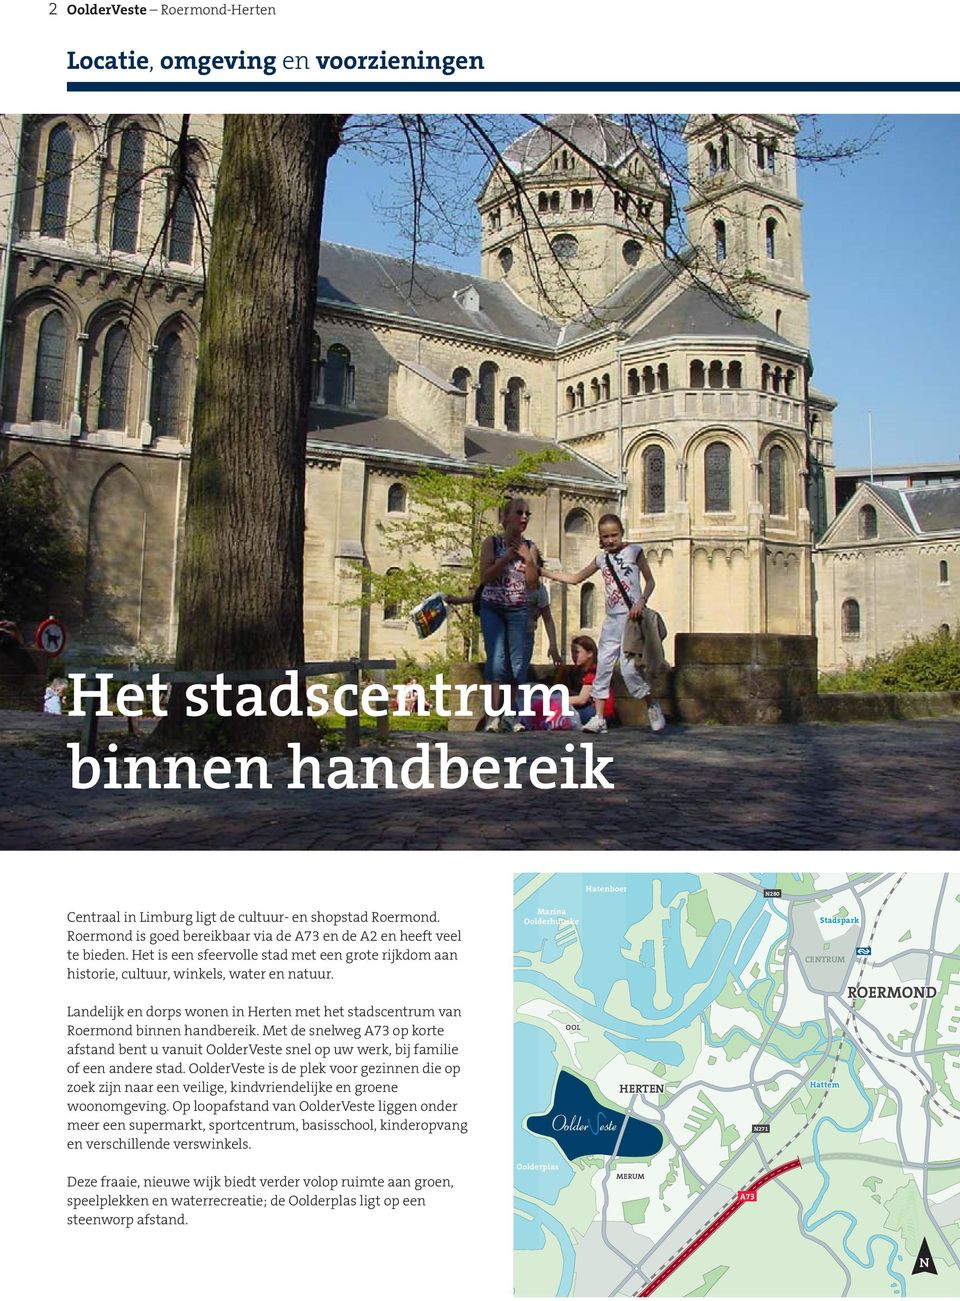 N280 N280 Marina Oolderhuuske Stadspark CENTRUM ROERMOND Landelijk en dorps wonen in Herten met het stadscentrum van Roermond binnen handbereik.